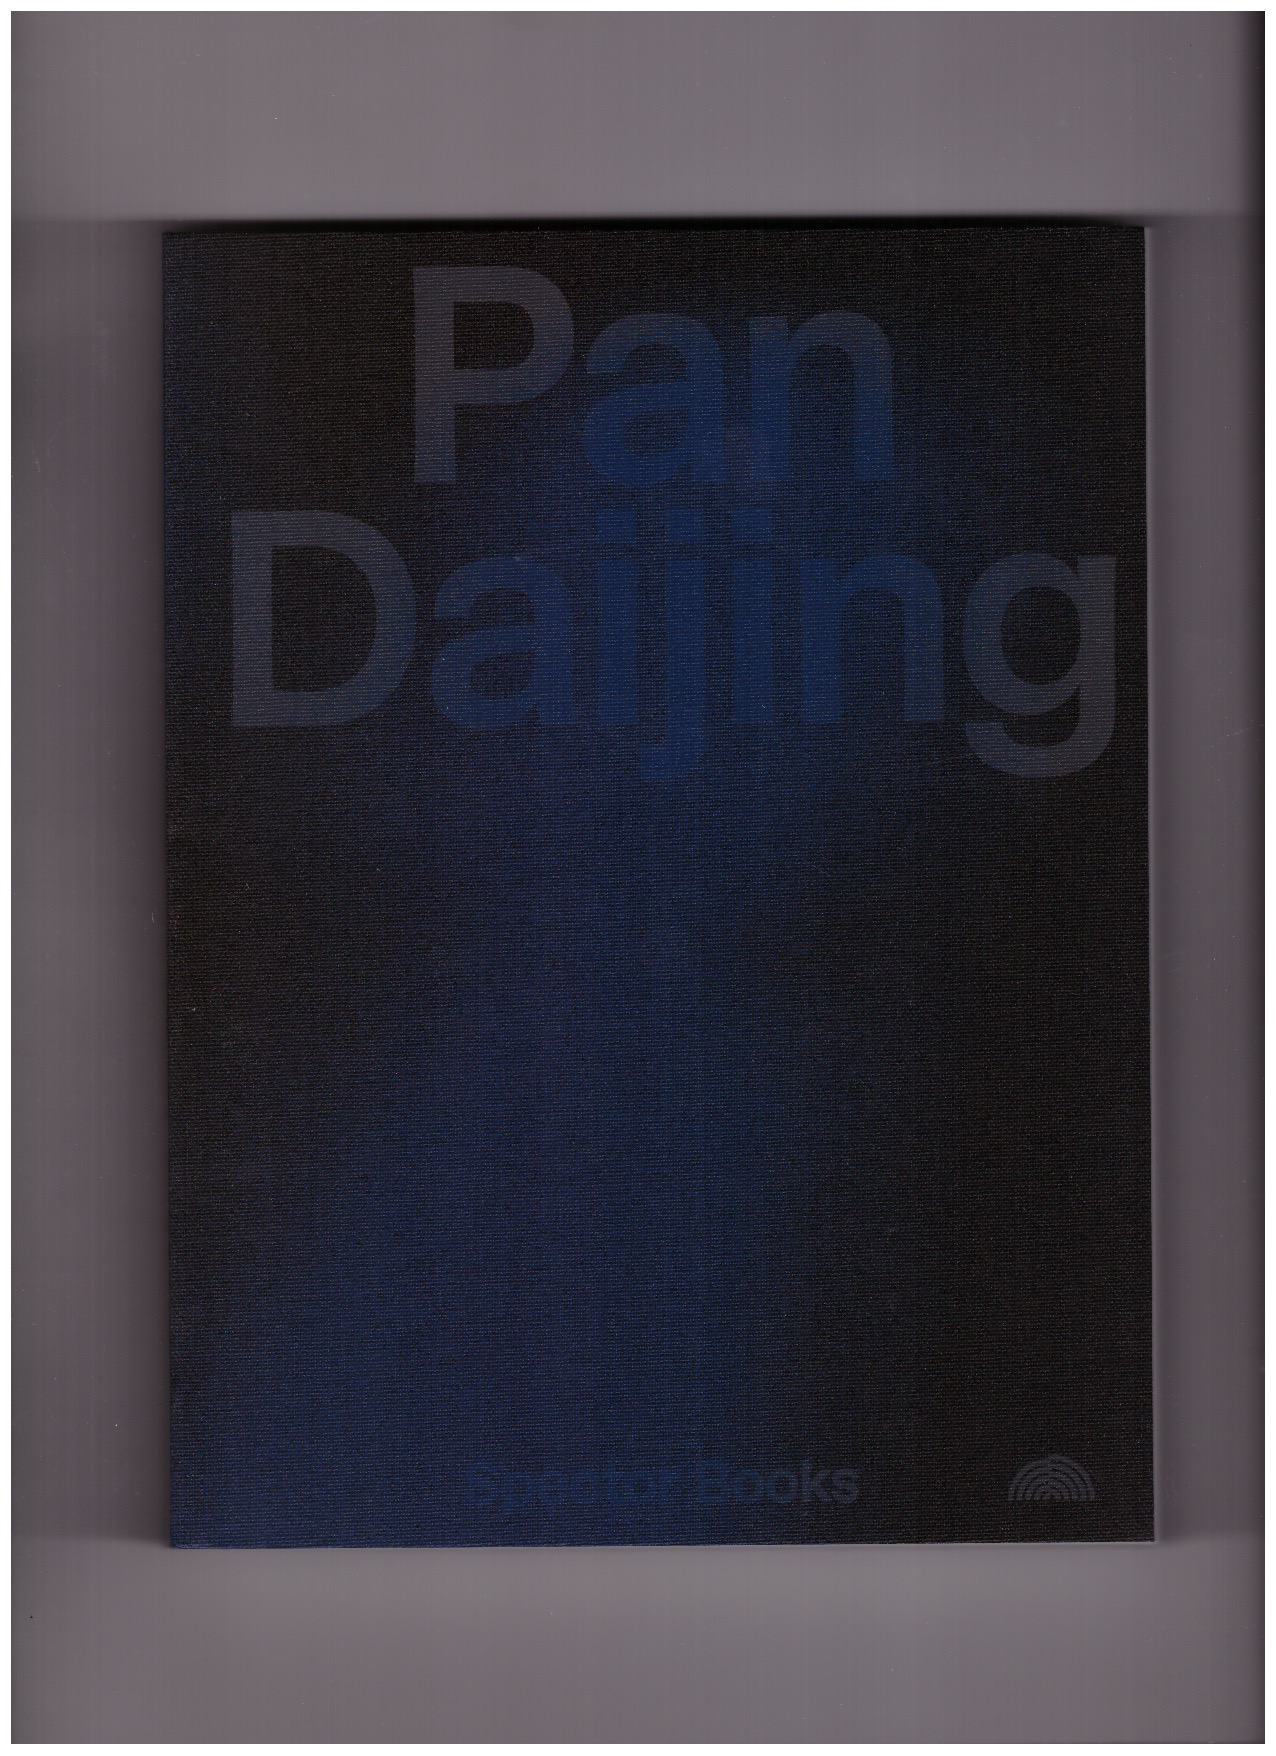 DAIJING, Pan; THEURER, Sarah Johanna (ed.) - Pan Daijing